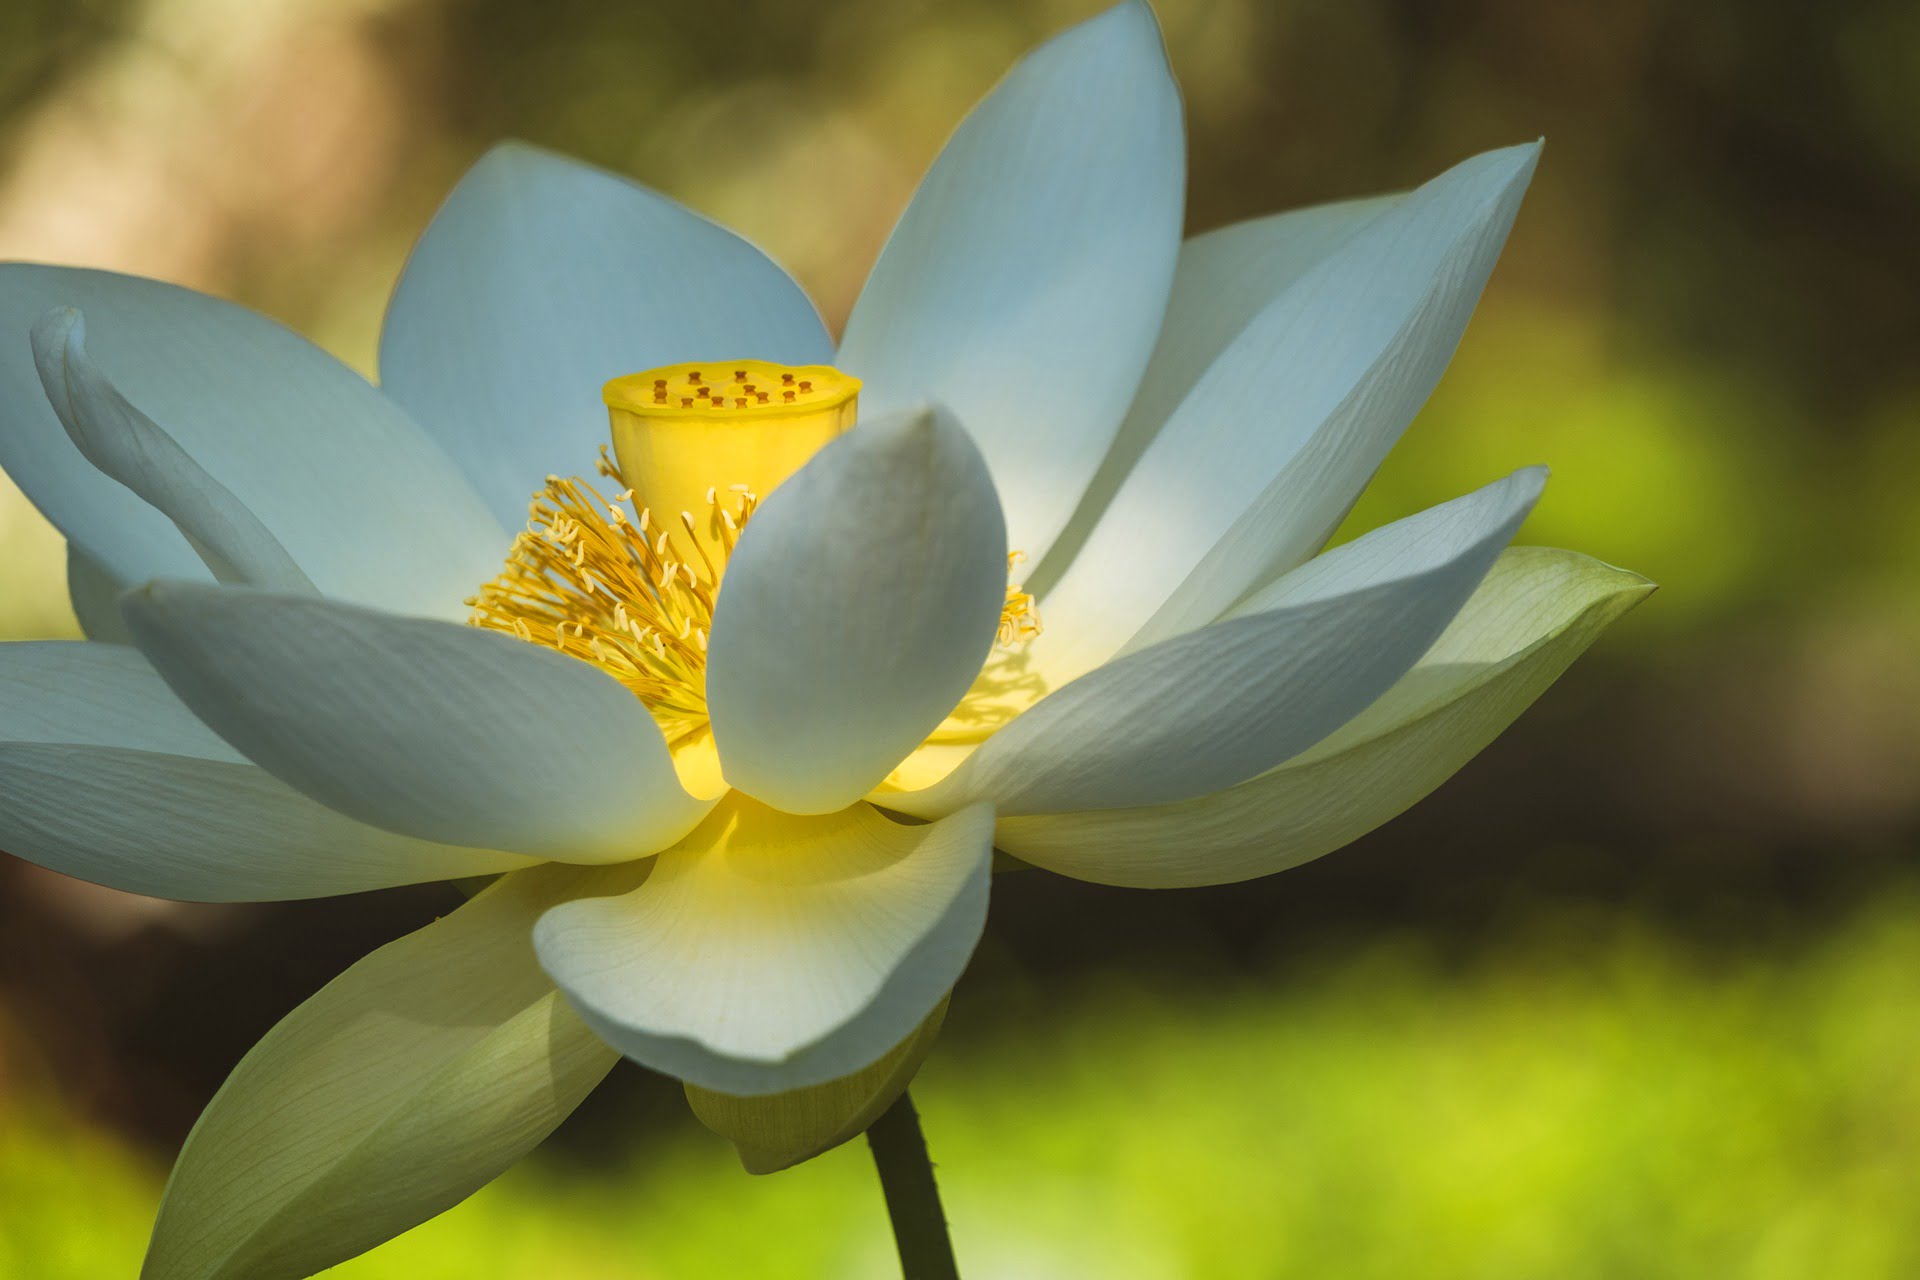 Flor de loto blanca